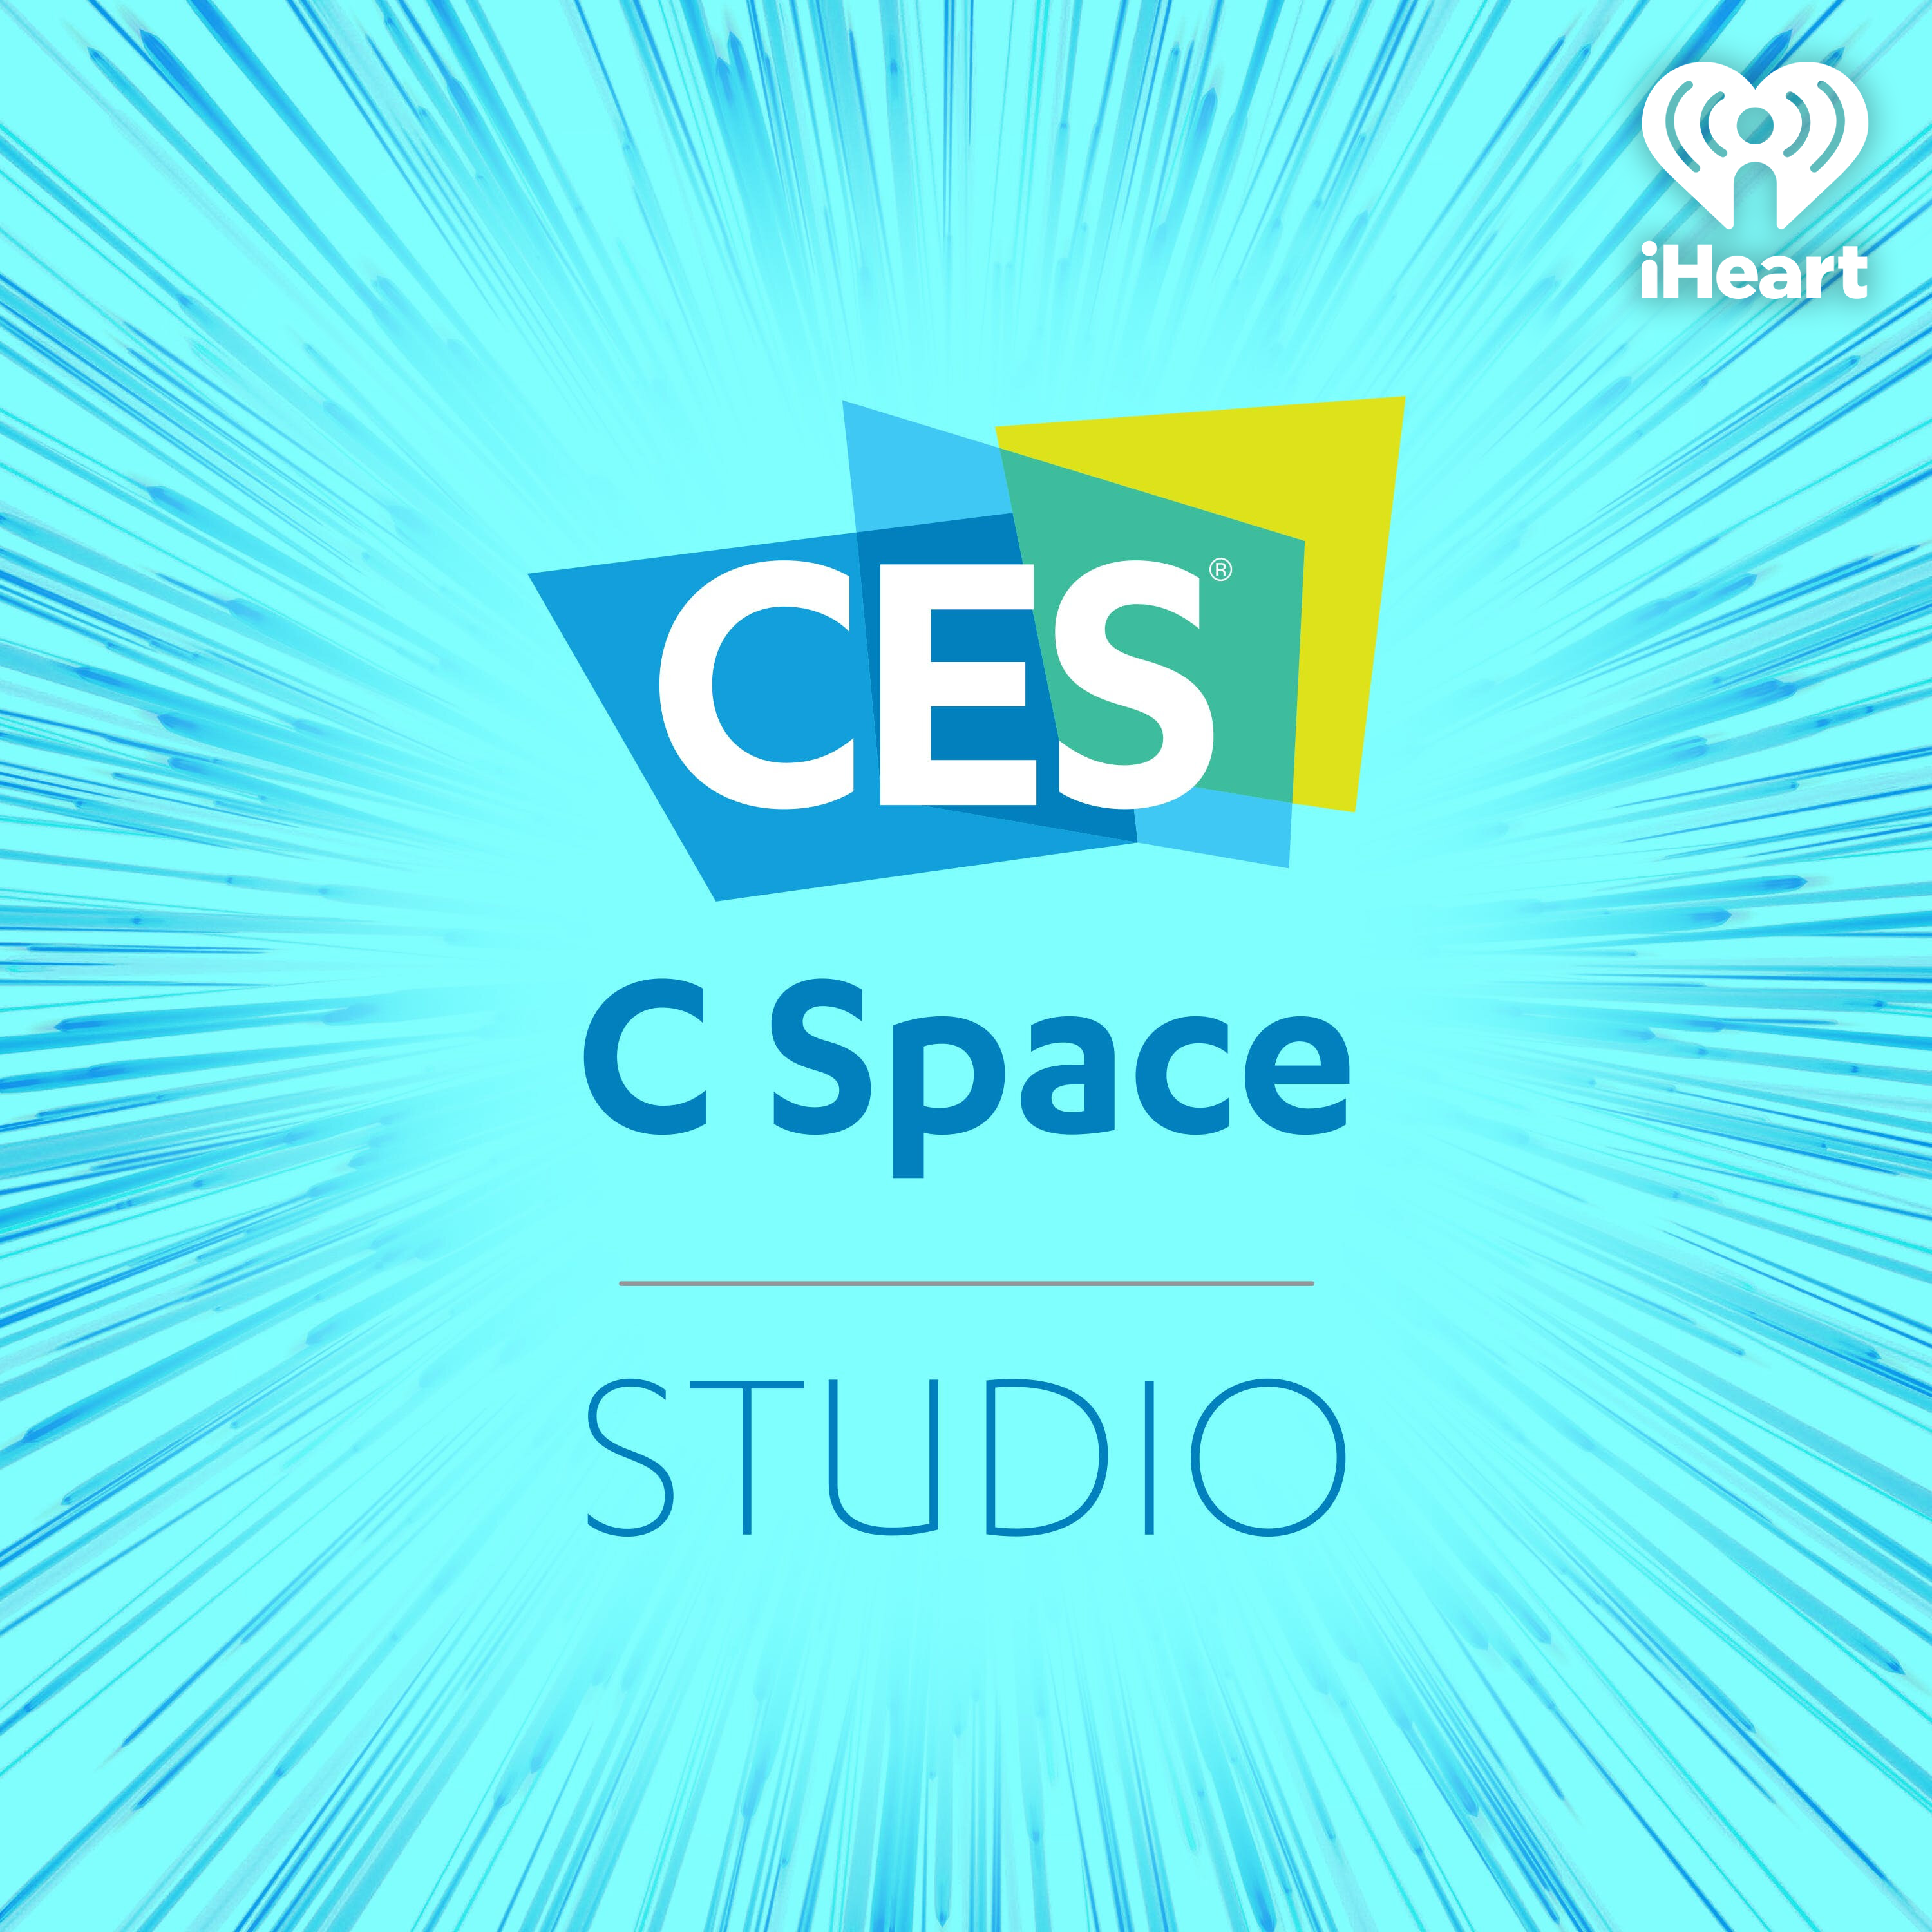 CES C Space Studio